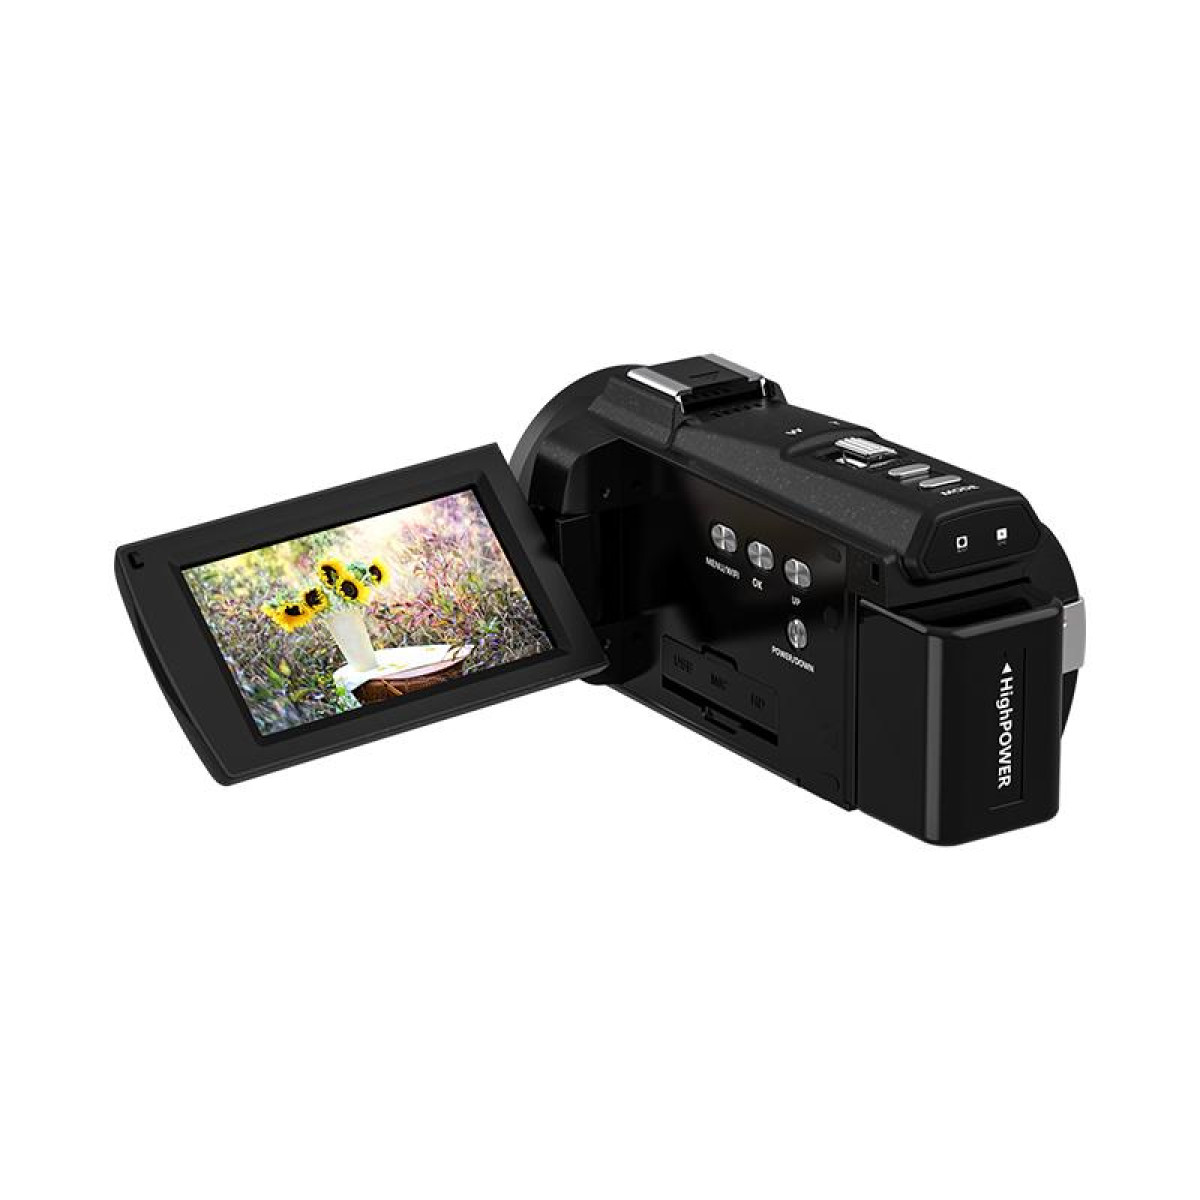 Camcorder INF 16x / 48MP Zoom Camcorder Zoom Fernbedienung/32-GB-K / 4K / opt. IR-Nachtsicht /